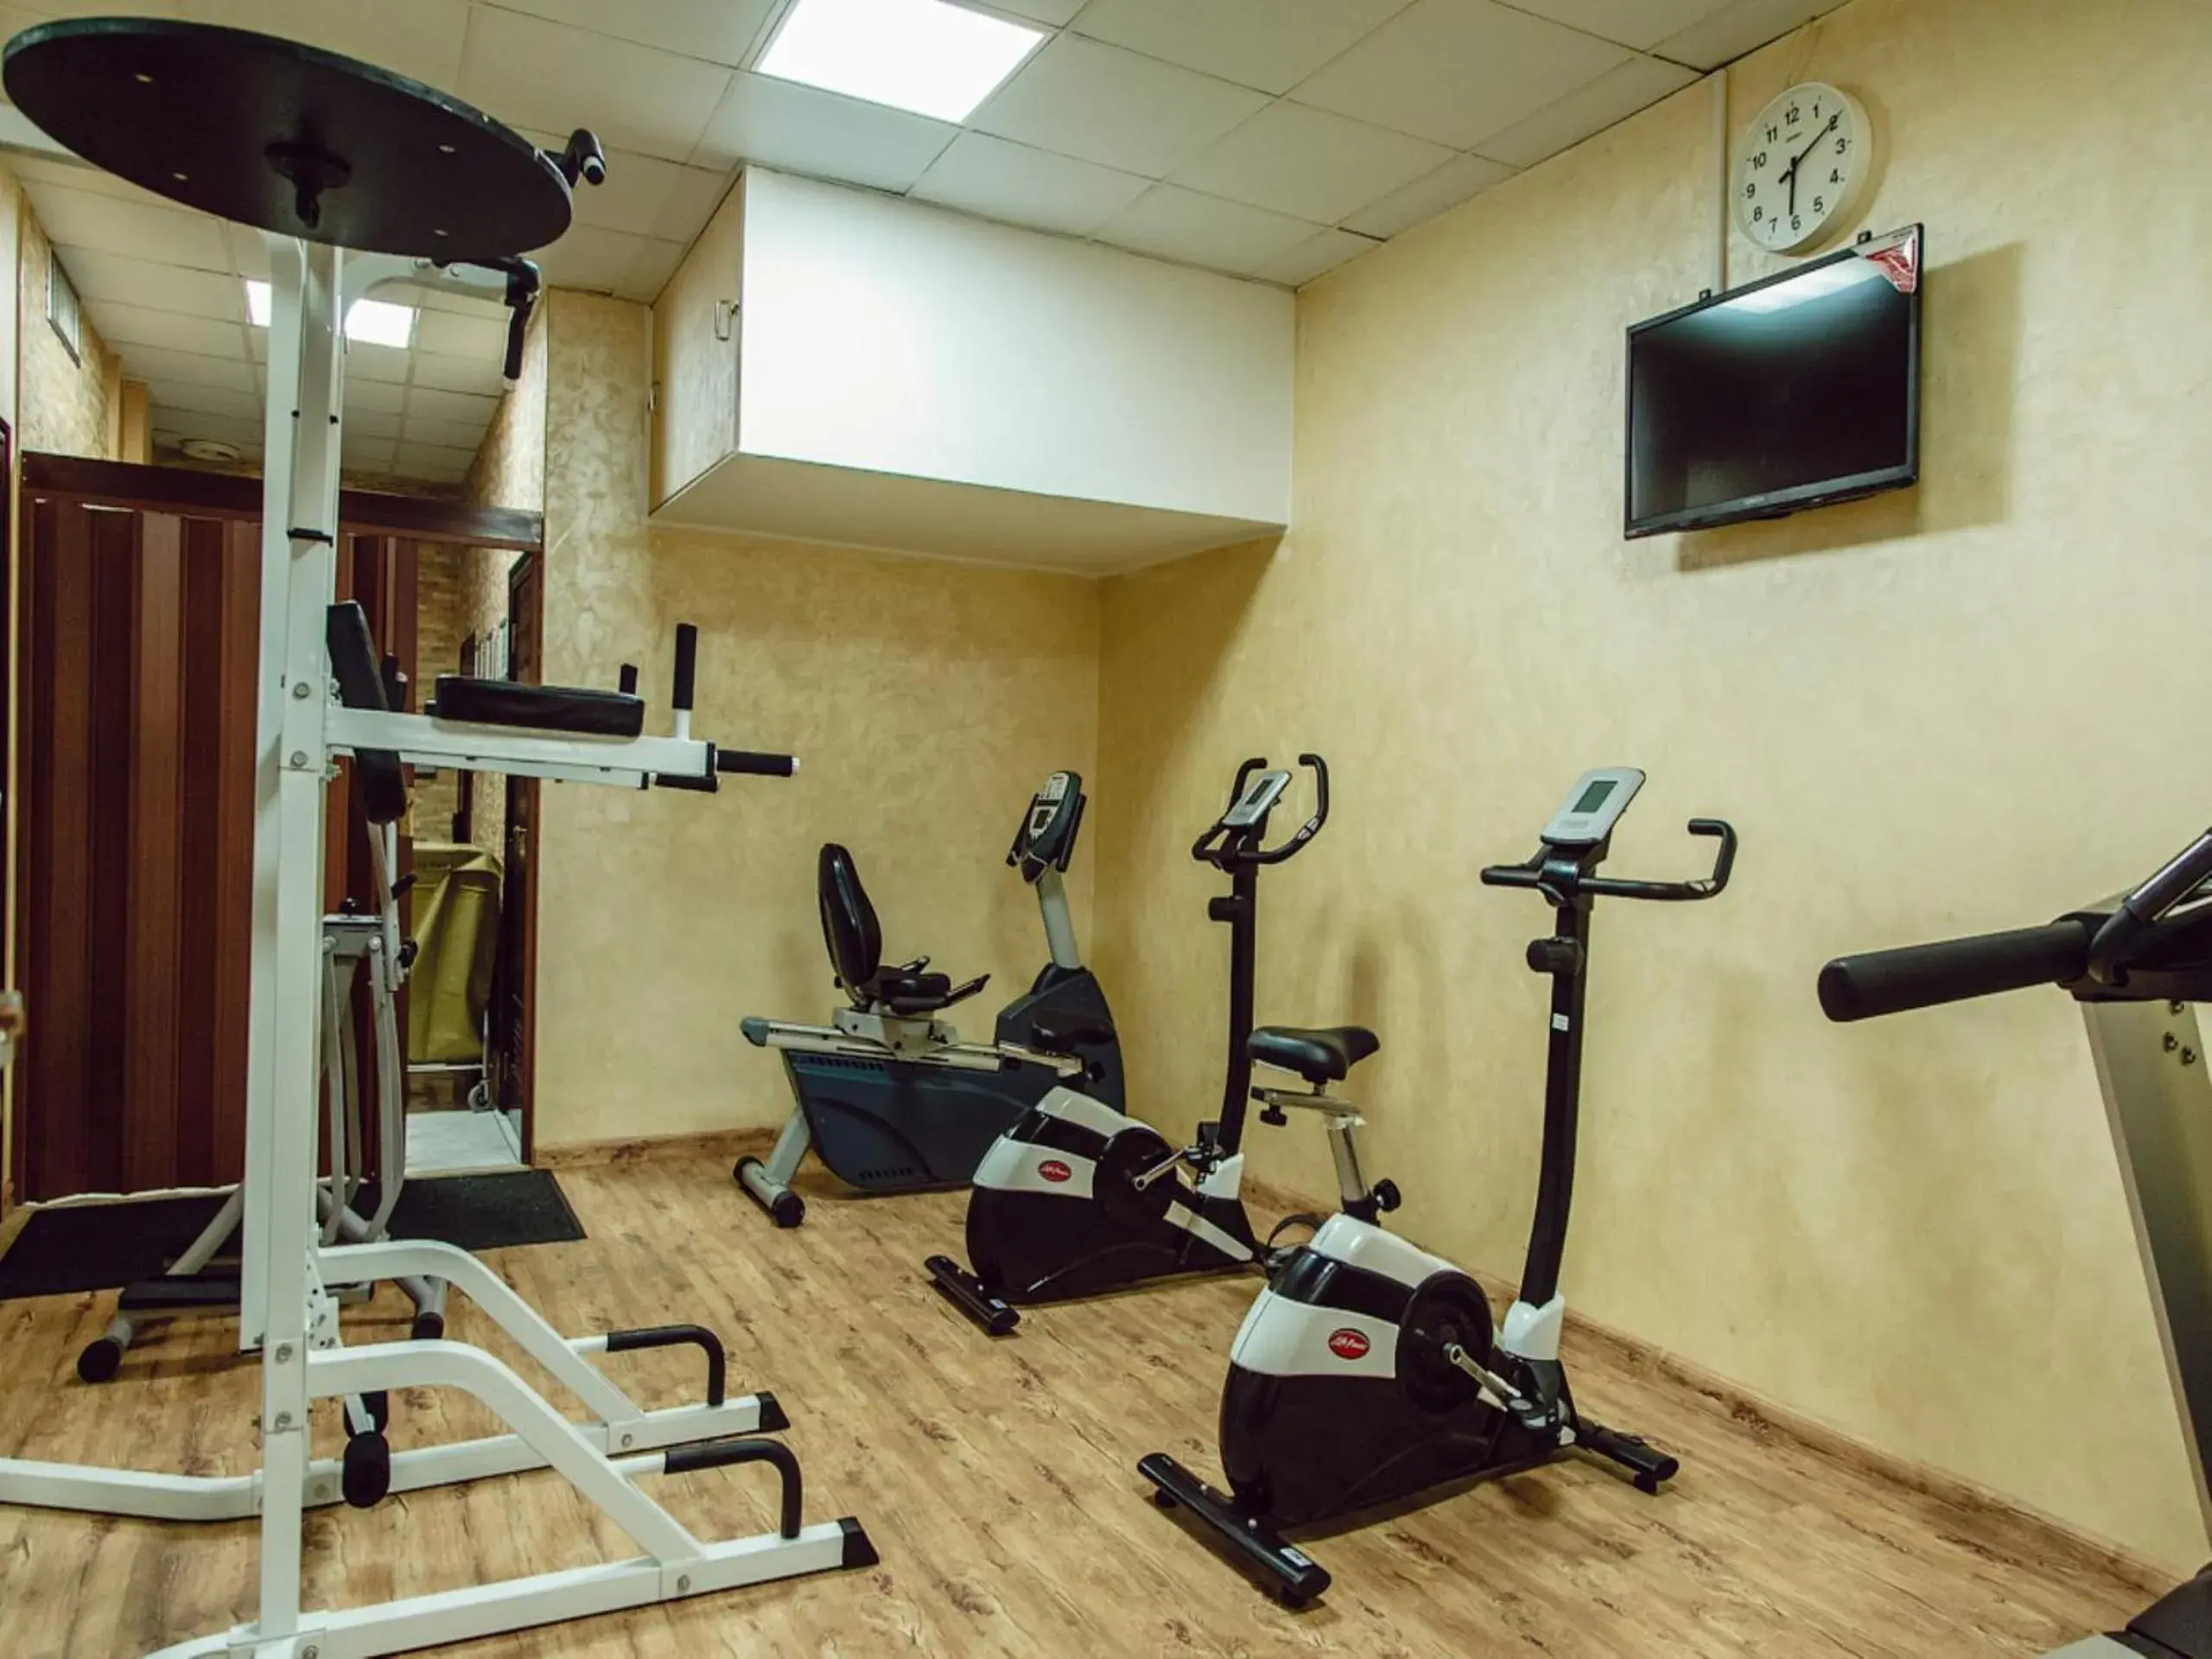 Fitness centre/facilities, Fitness Center/Facilities in Sharjah Carlton Hotel